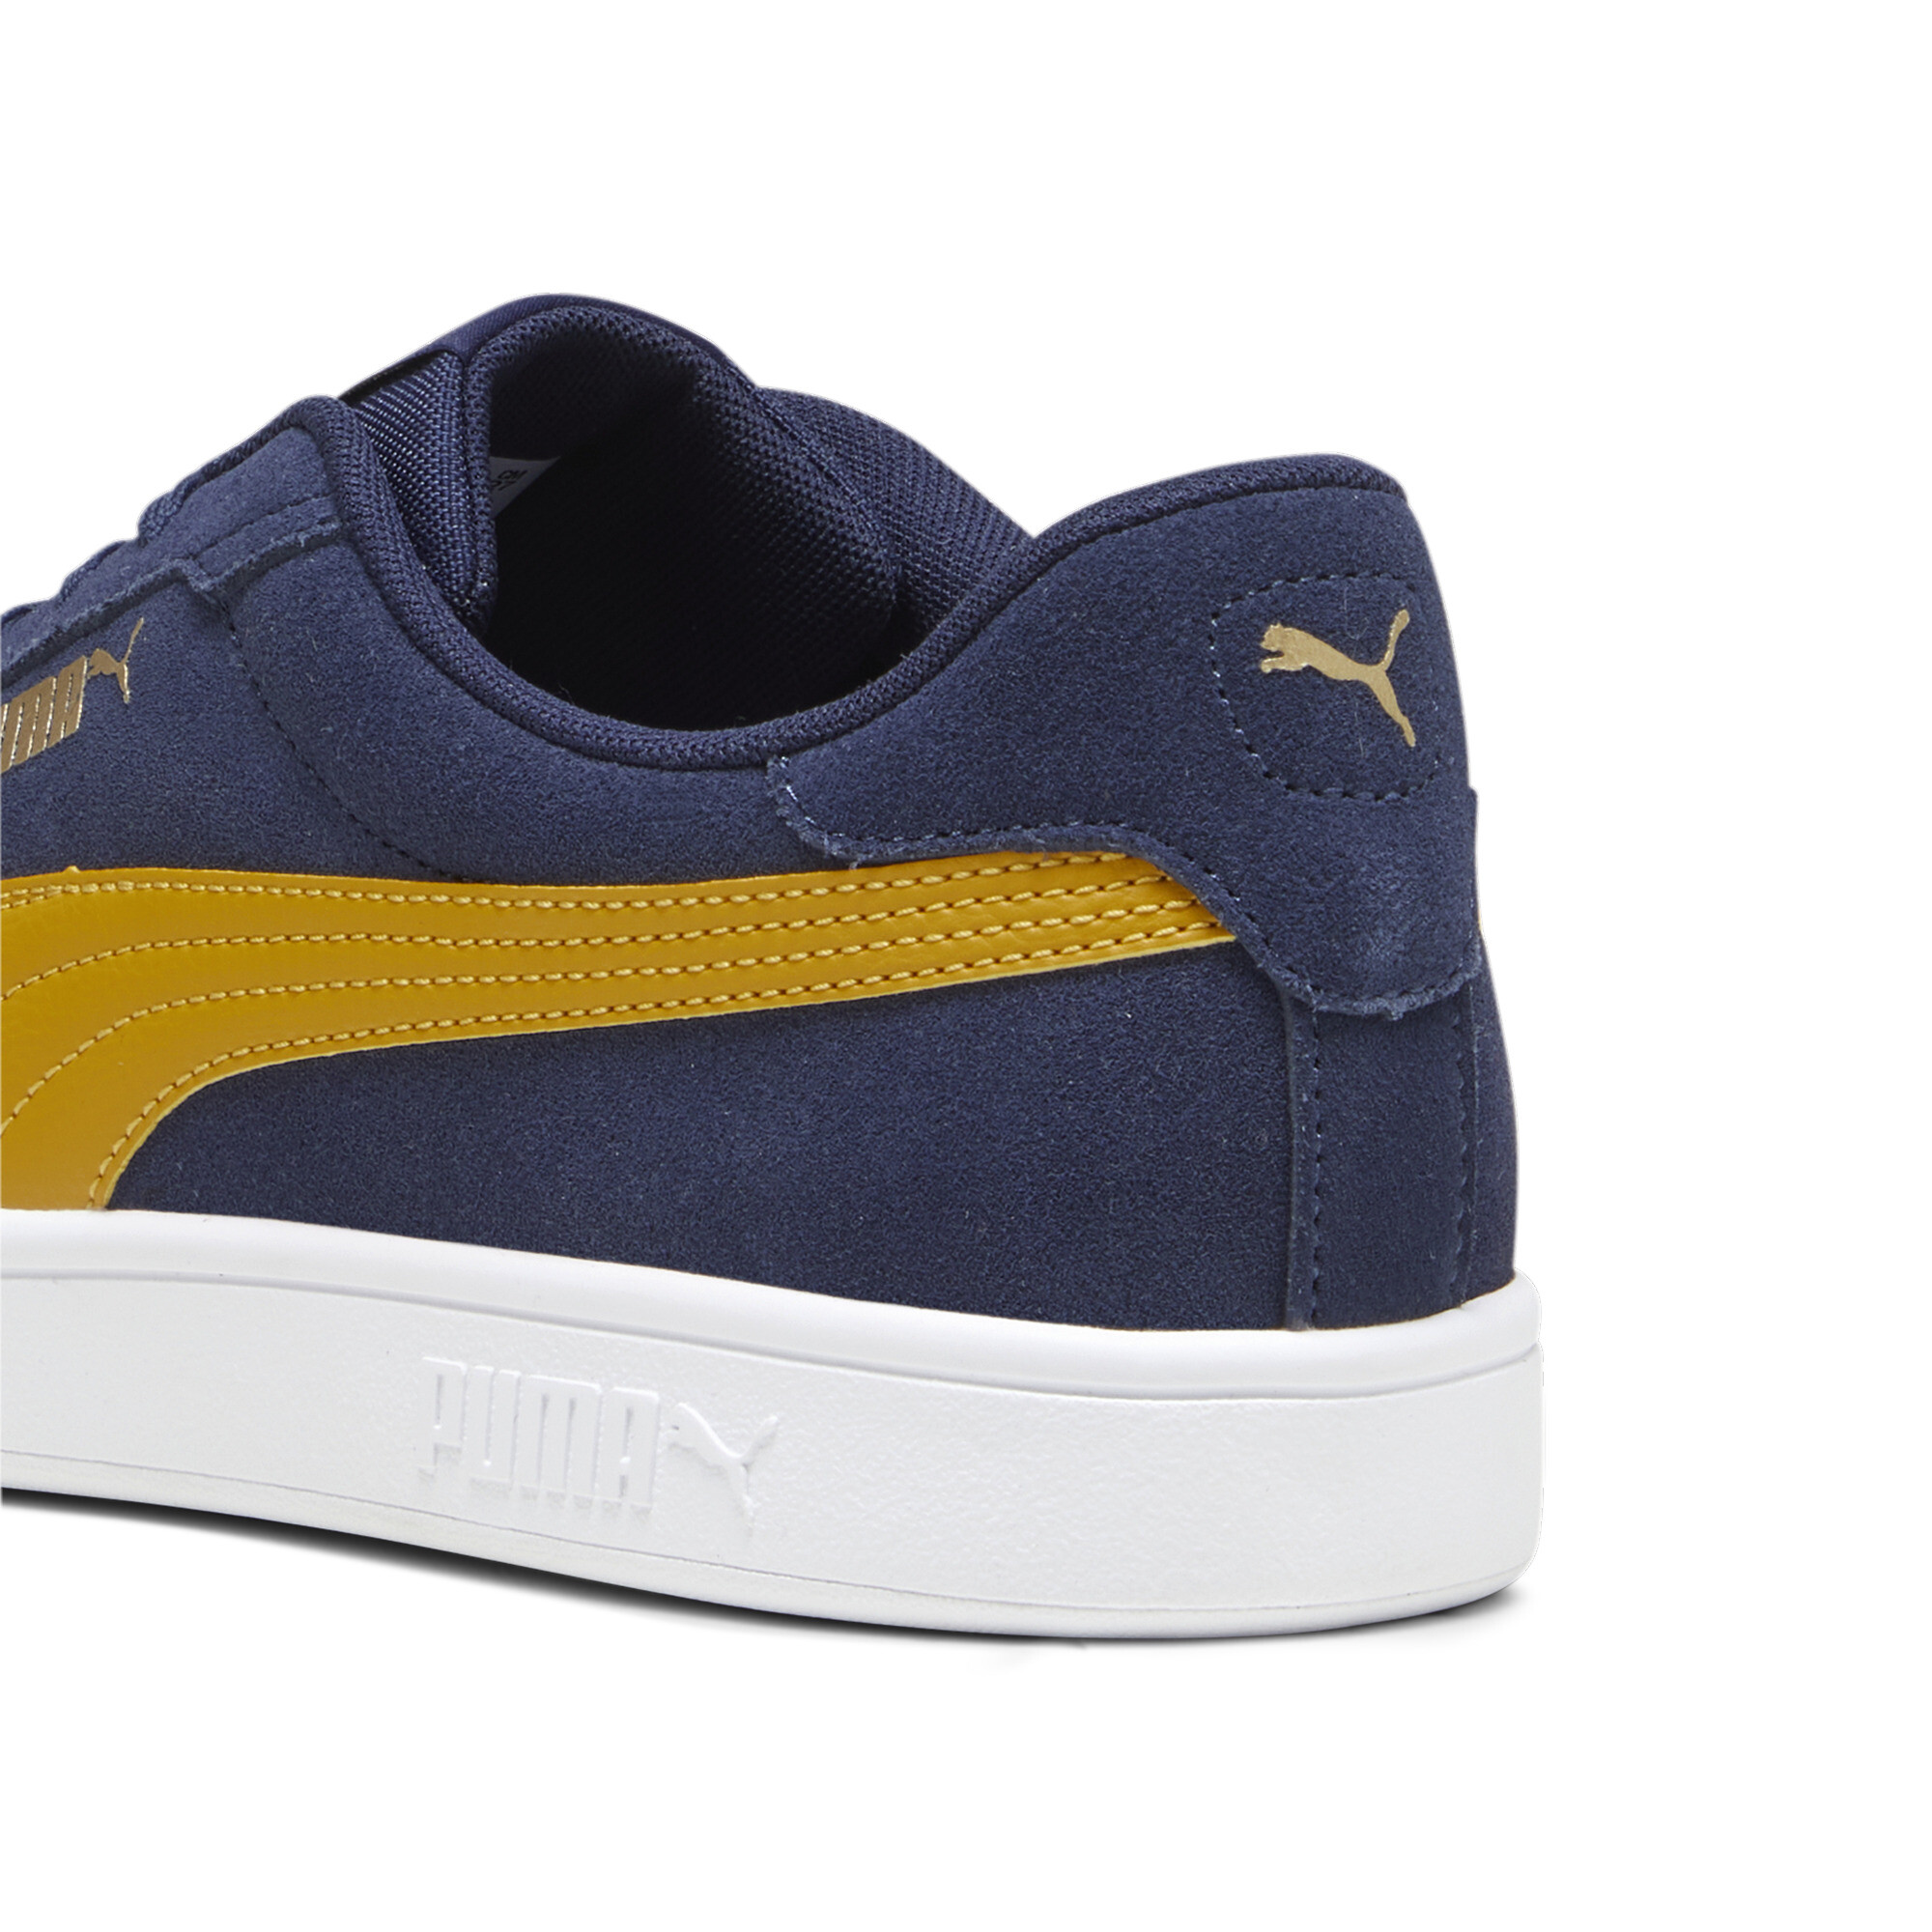 Puma Smash 3.0 Sneakers, Blue, Size 42, Shoes